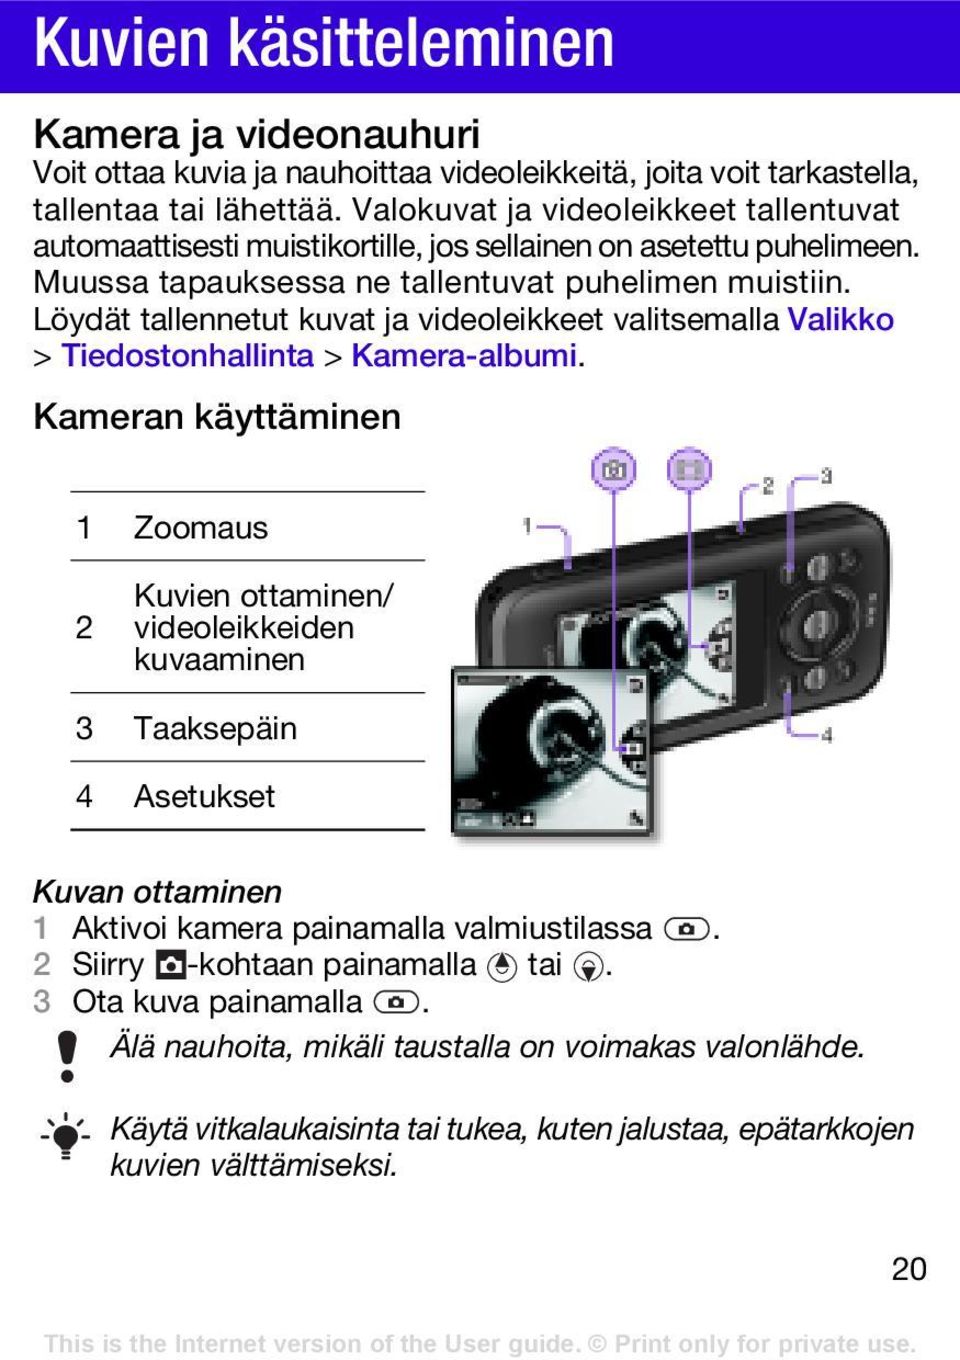 Löydät tallennetut kuvat ja videoleikkeet valitsemalla Valikko > Tiedostonhallinta > Kamera-albumi.